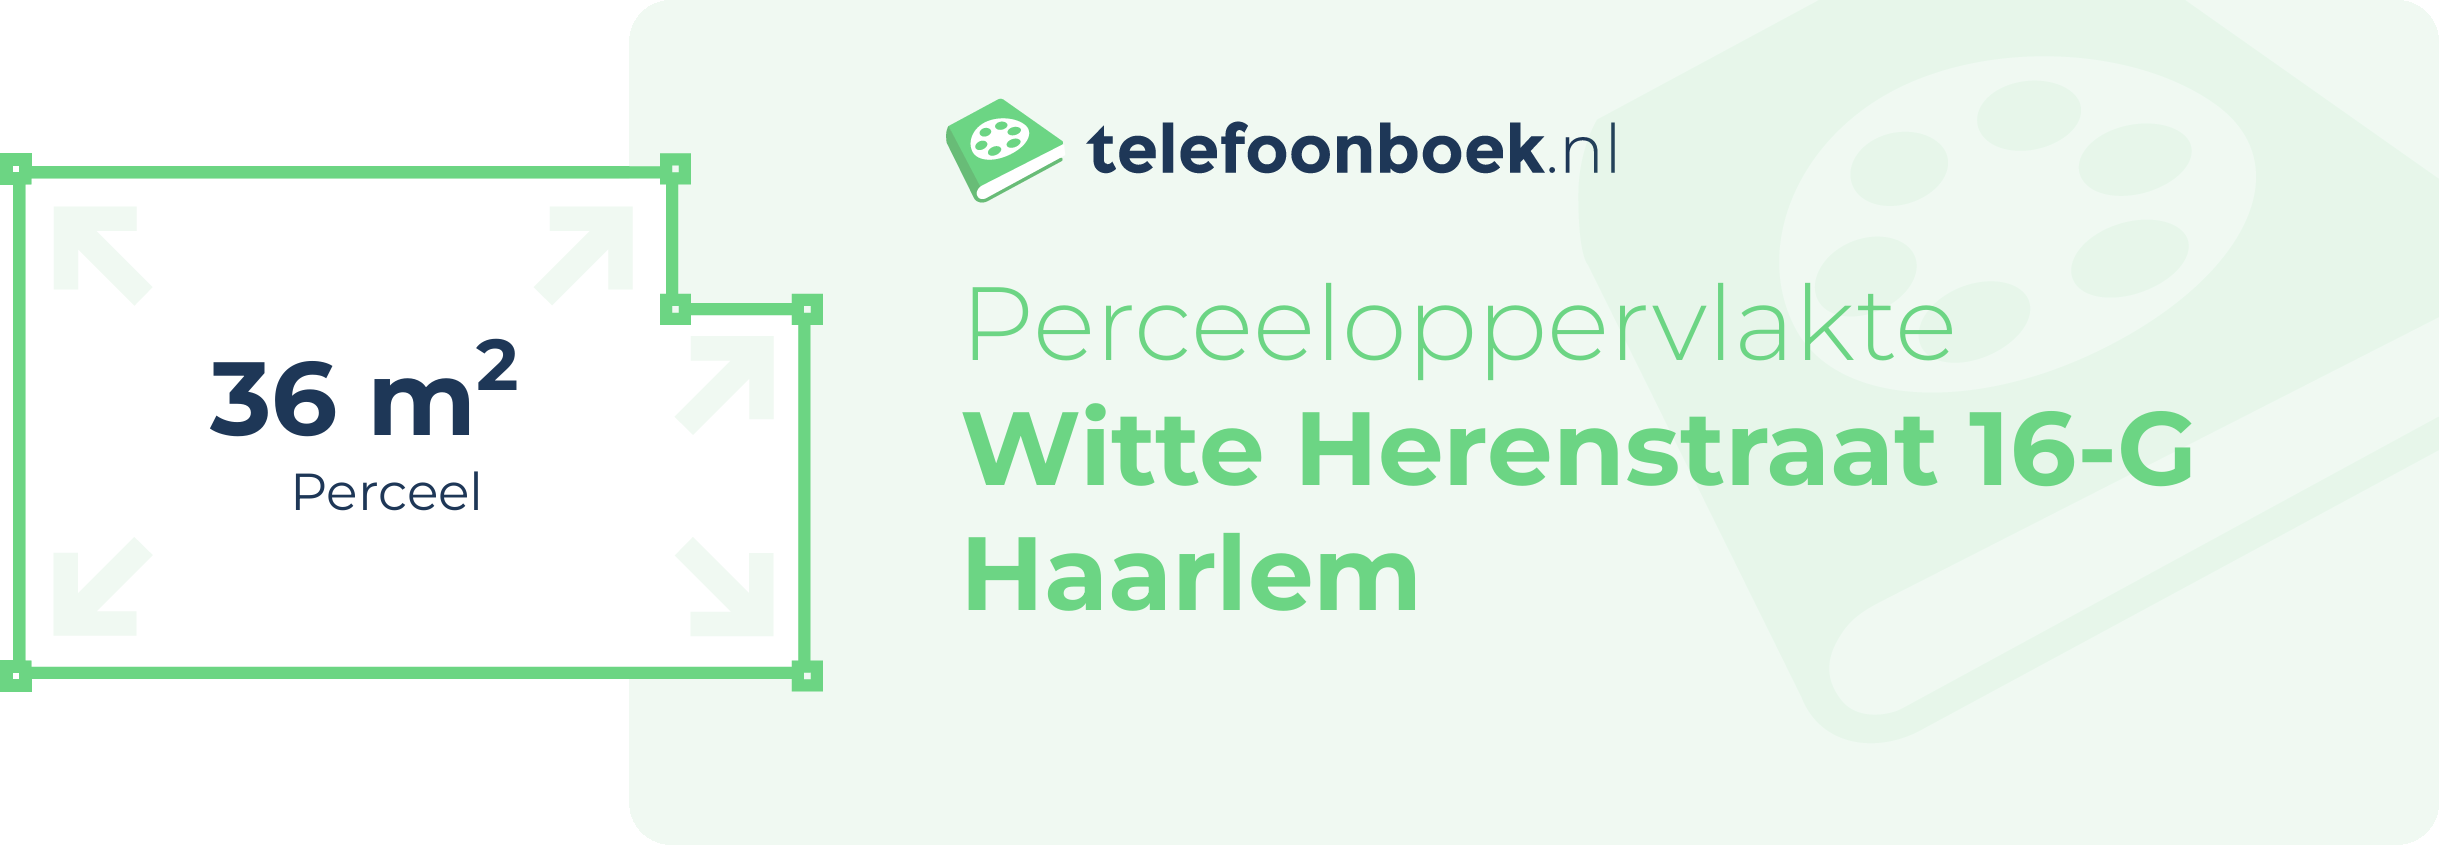 Perceeloppervlakte Witte Herenstraat 16-G Haarlem